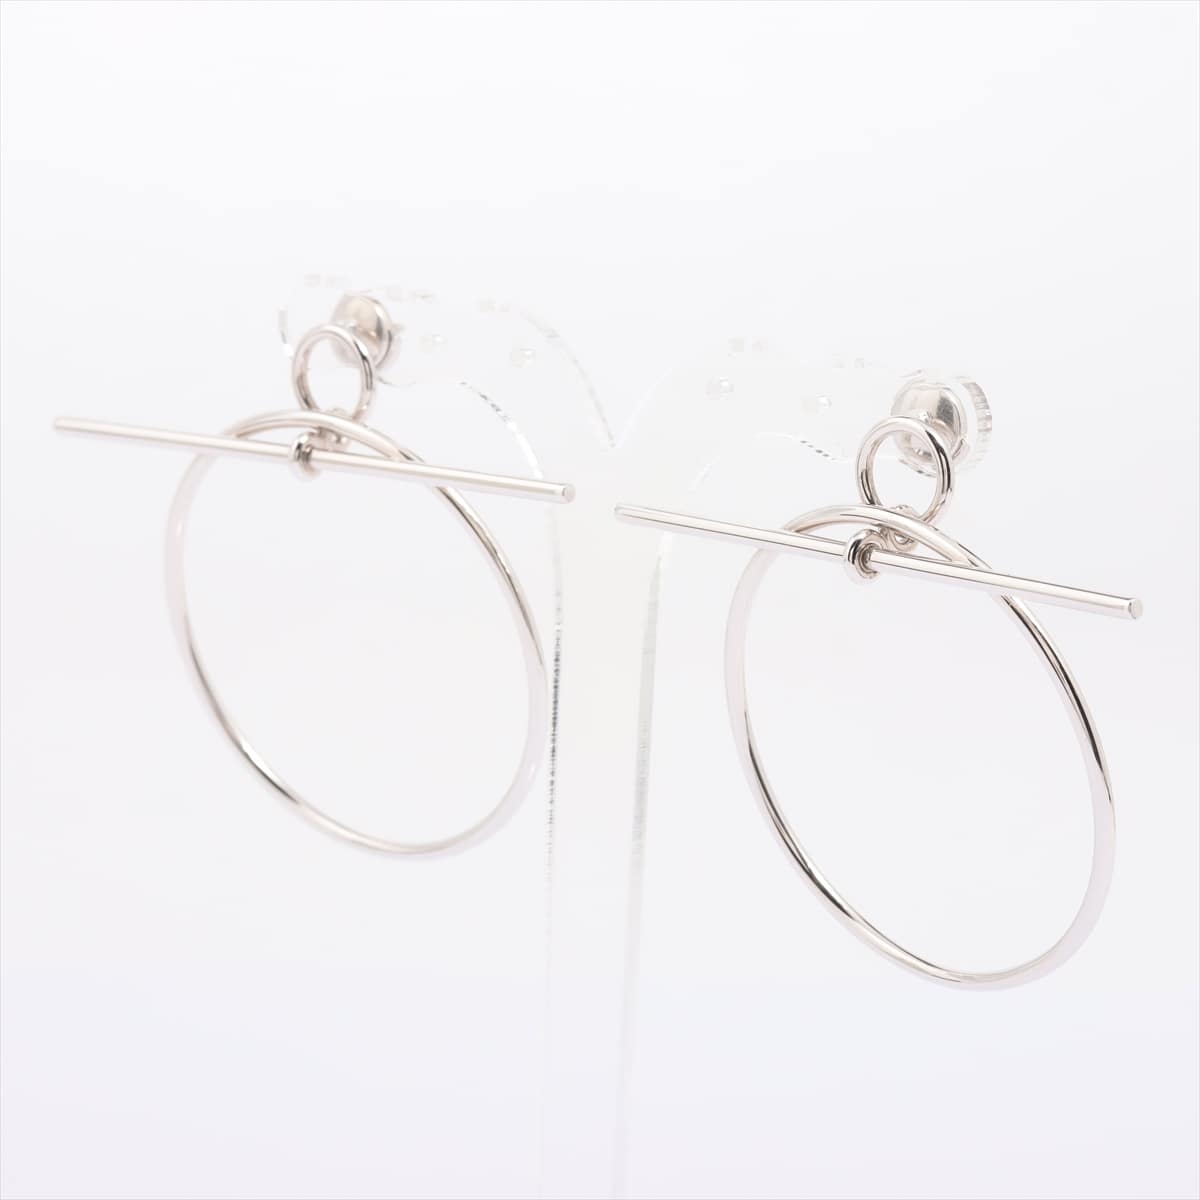 Hermès Loop Medium Piercing jewelry (for both ears) 925 11.2g Silver